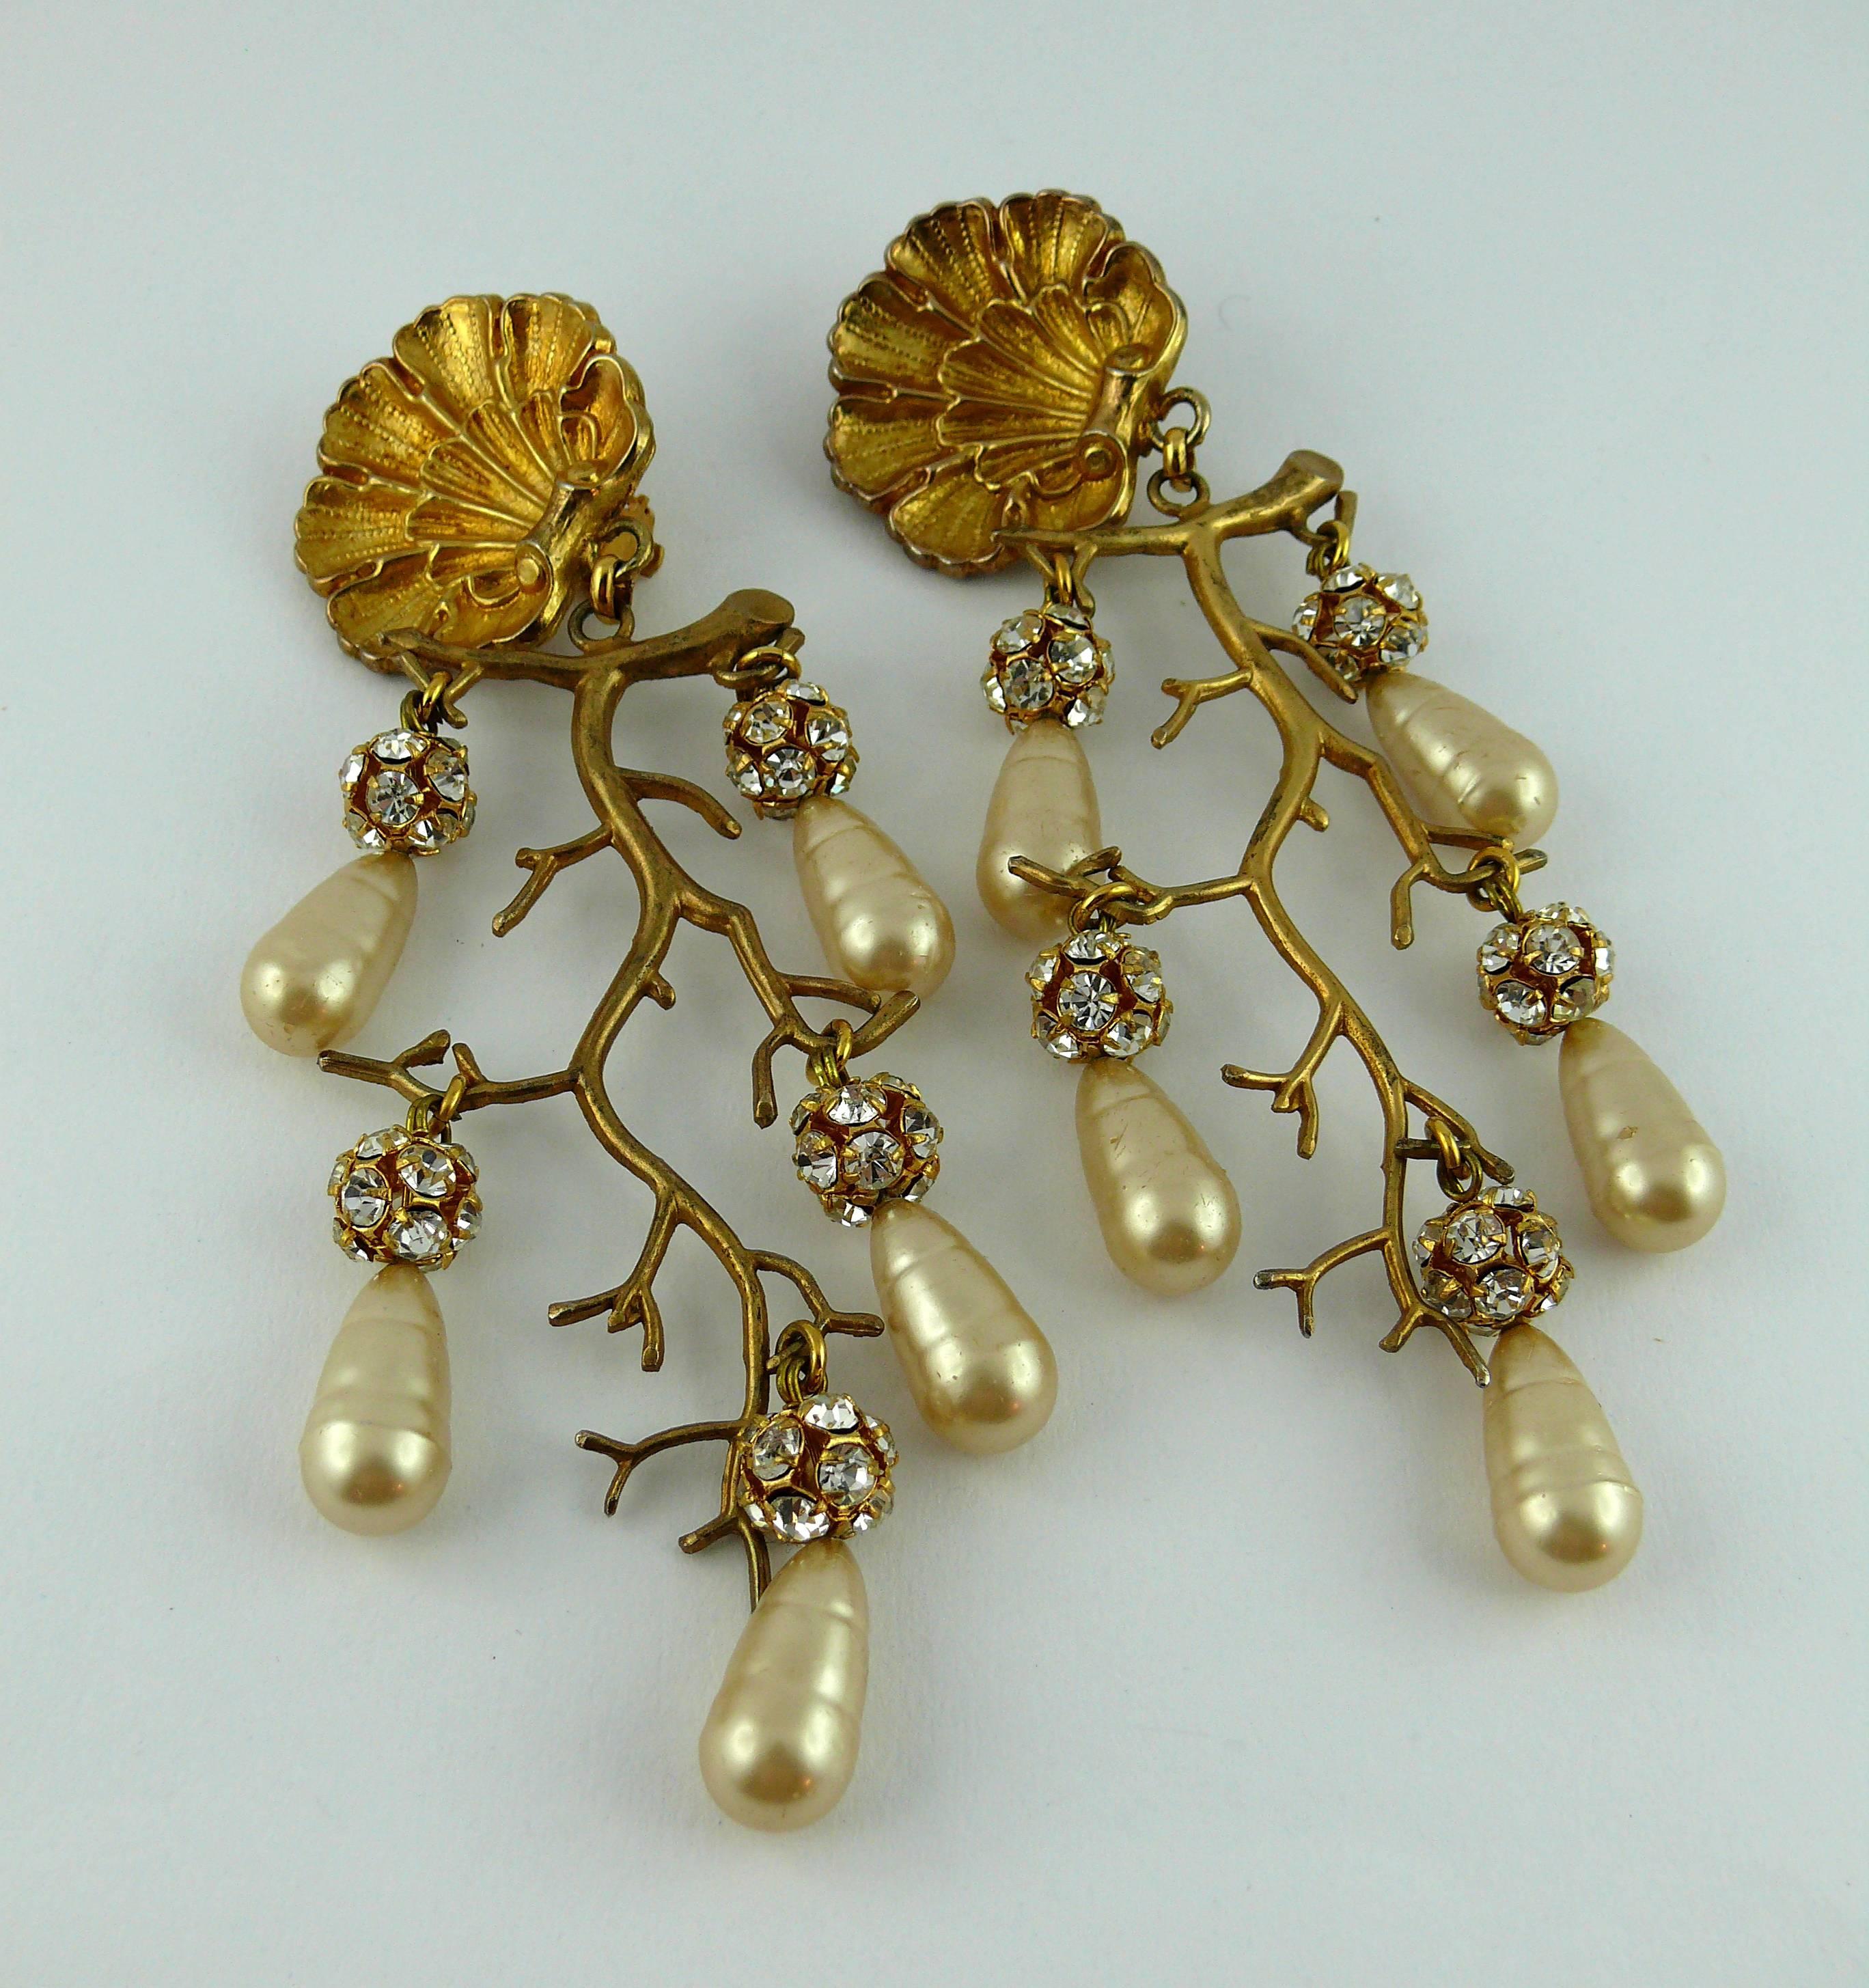 Boucles d'oreilles chandelier PHILIPPE FERRANDIS vintage en forme de coquillage baroque.

Métal doré agrémenté de rondelles de cristal et de gouttes de fausses perles en verre.

Marqué PHILIPPE FERRANDIS Paris.

TABLEAU D'ÉTAT DES BIJOUX
- Neuf ou